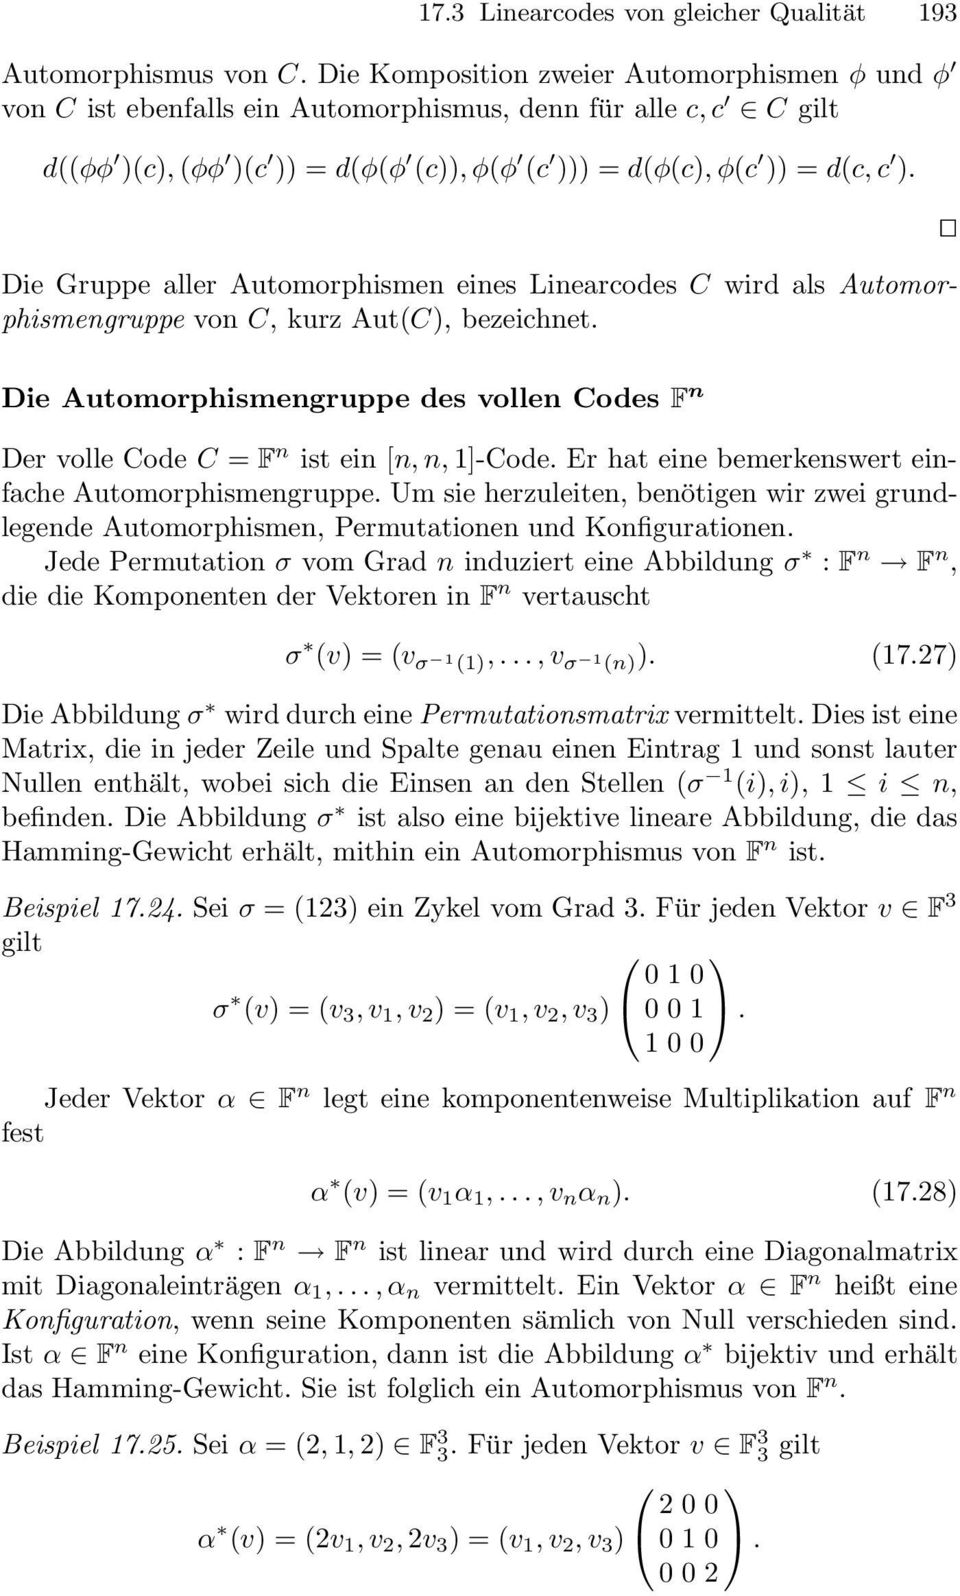 Die Gruppe aller Automorphismen eines Linearcodes C wird als Automorphismengruppe von C, kurz Aut(C), bezeichnet.